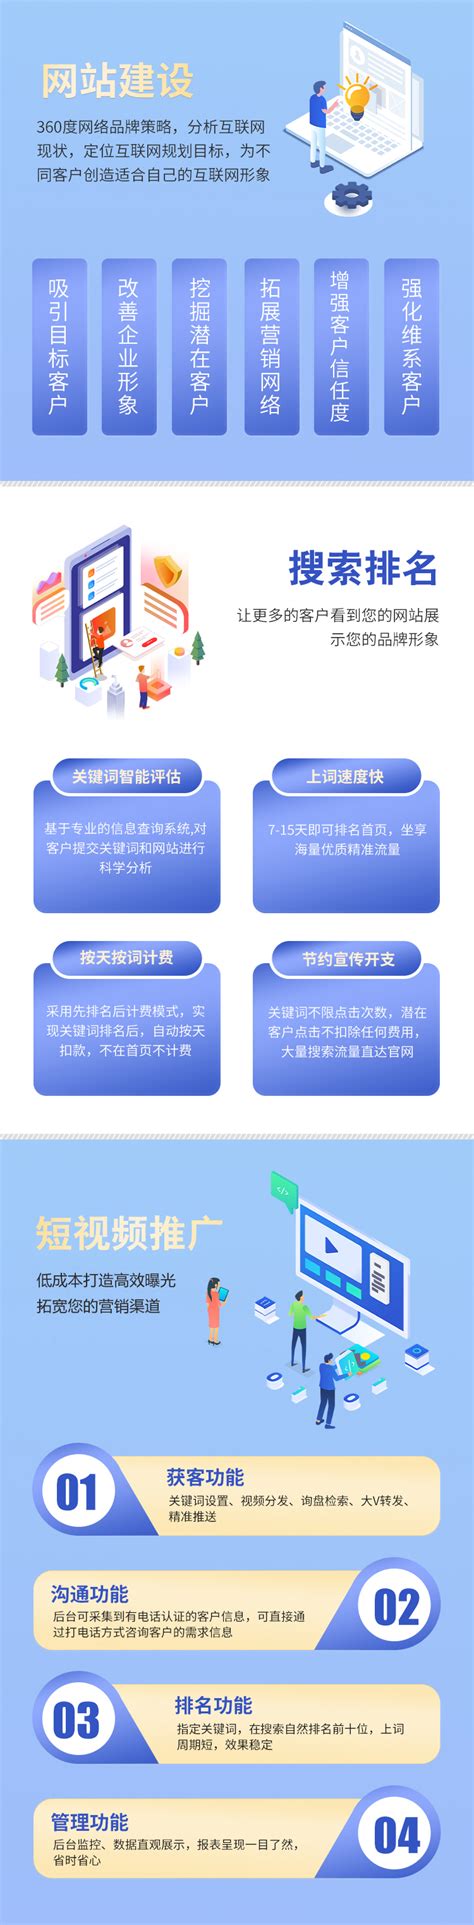 重庆网站建设的概述